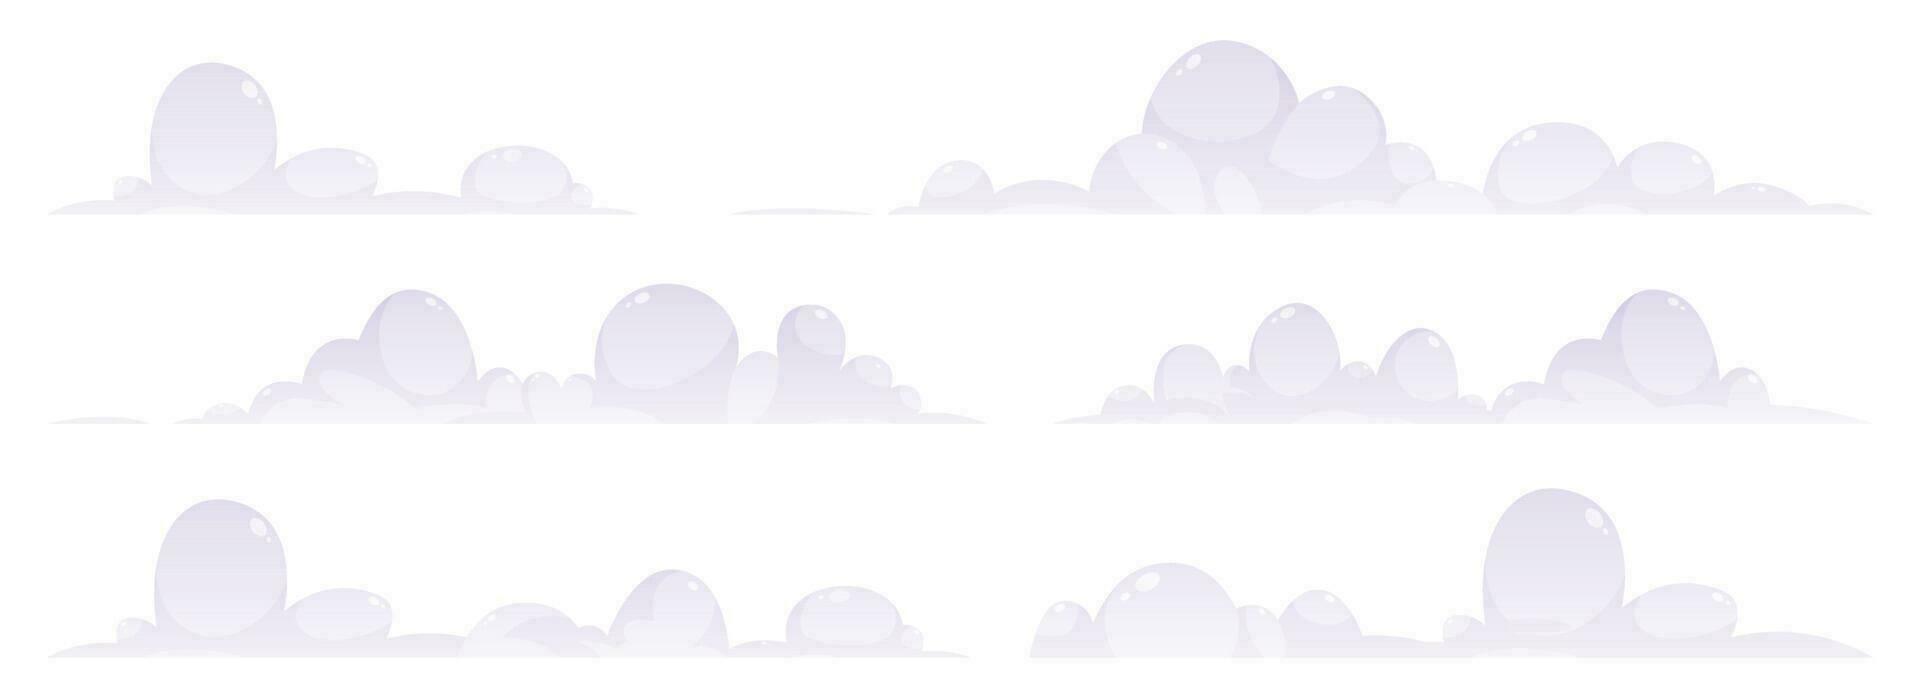 Karikatur Wolken Sammlung Vektor Illustration isoliert auf Weiß Hintergrund